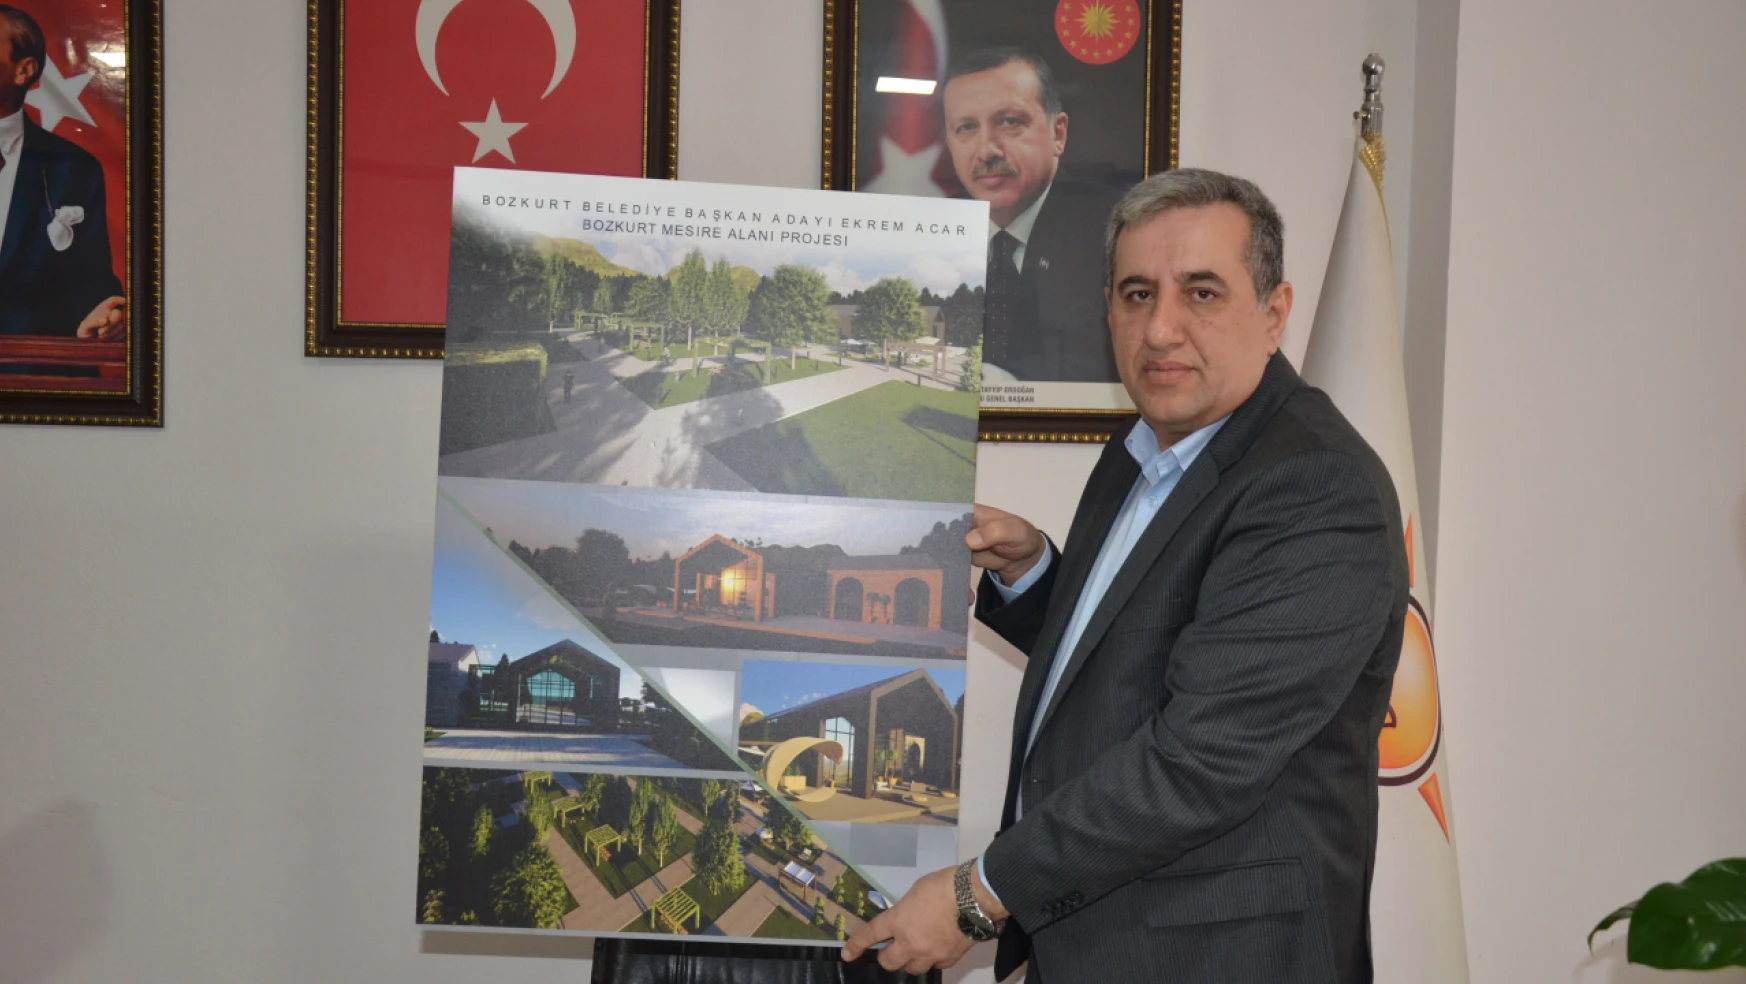 Bozkurt Belediye Başkan Adayı Acar: 'Bozkurt'un Geleceğini Tasarlayacağız'